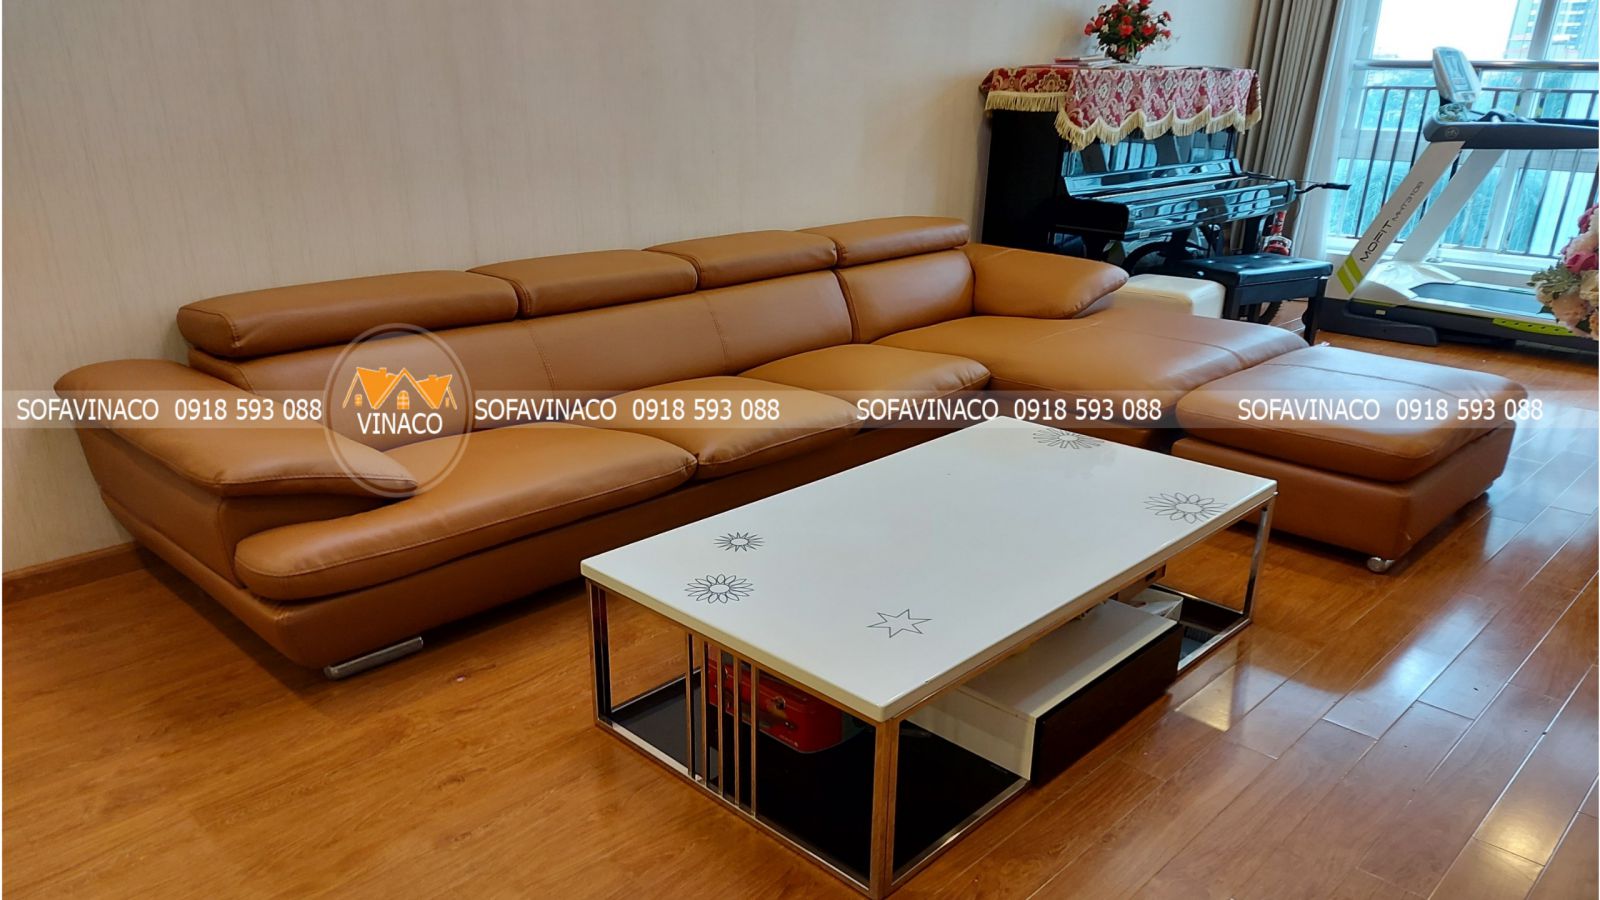 Giá bọc ghế sofa mới nhất năm 2019 tại Hà Nội của Vinaco